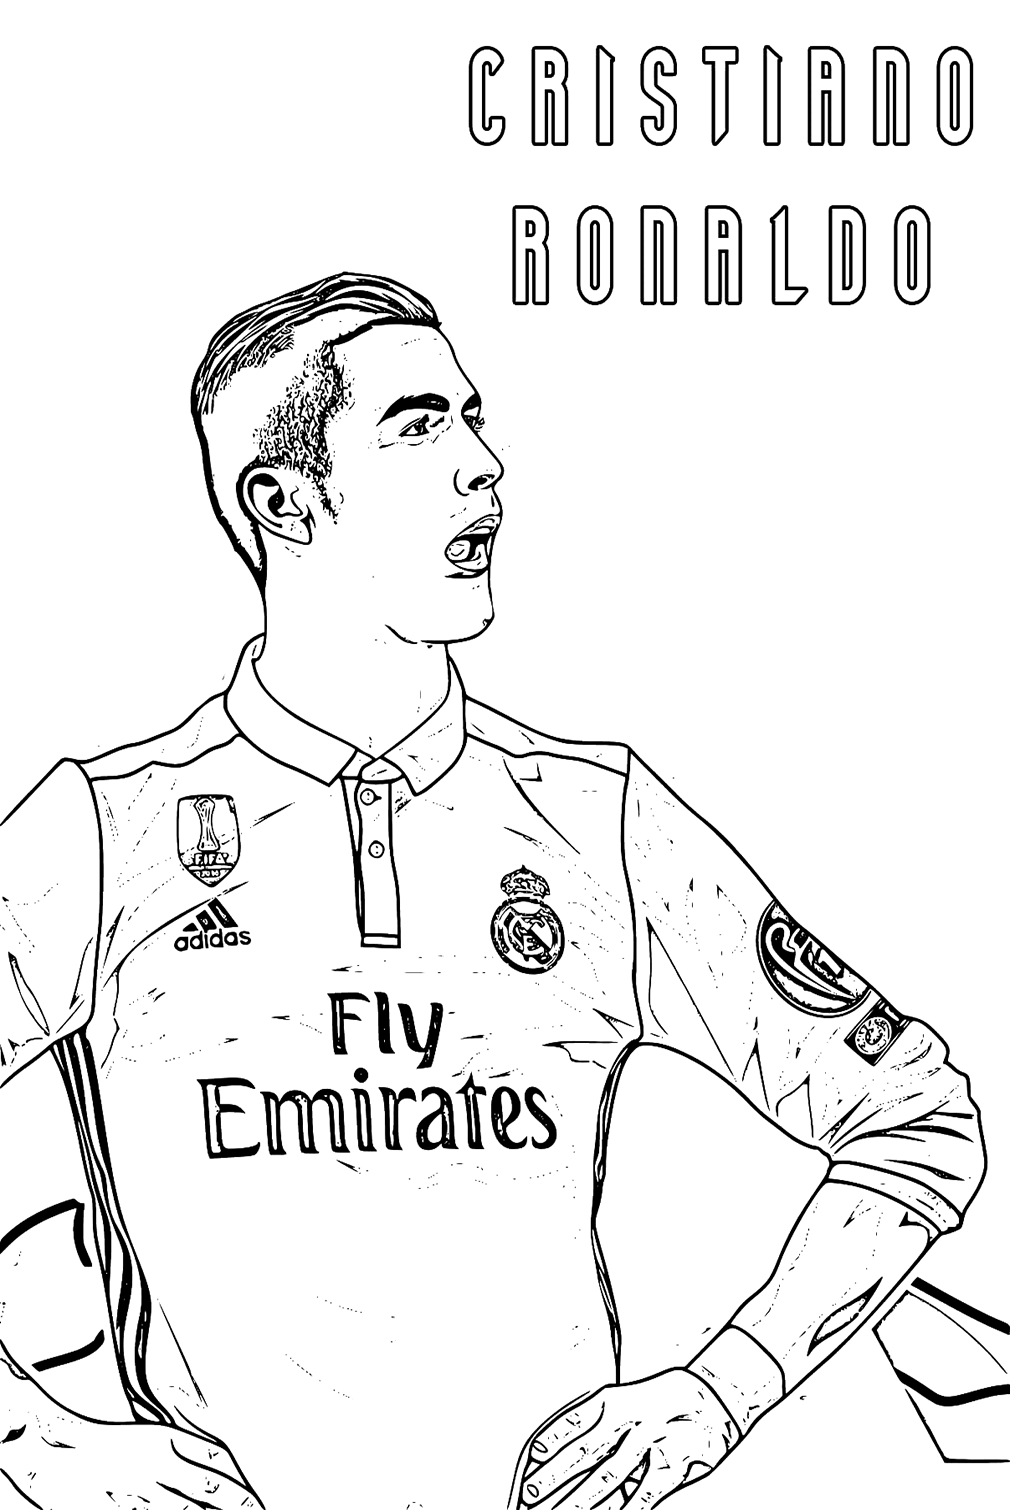 Imágenes de Cristiano Ronaldo para colorear de Cristiano Ronaldo